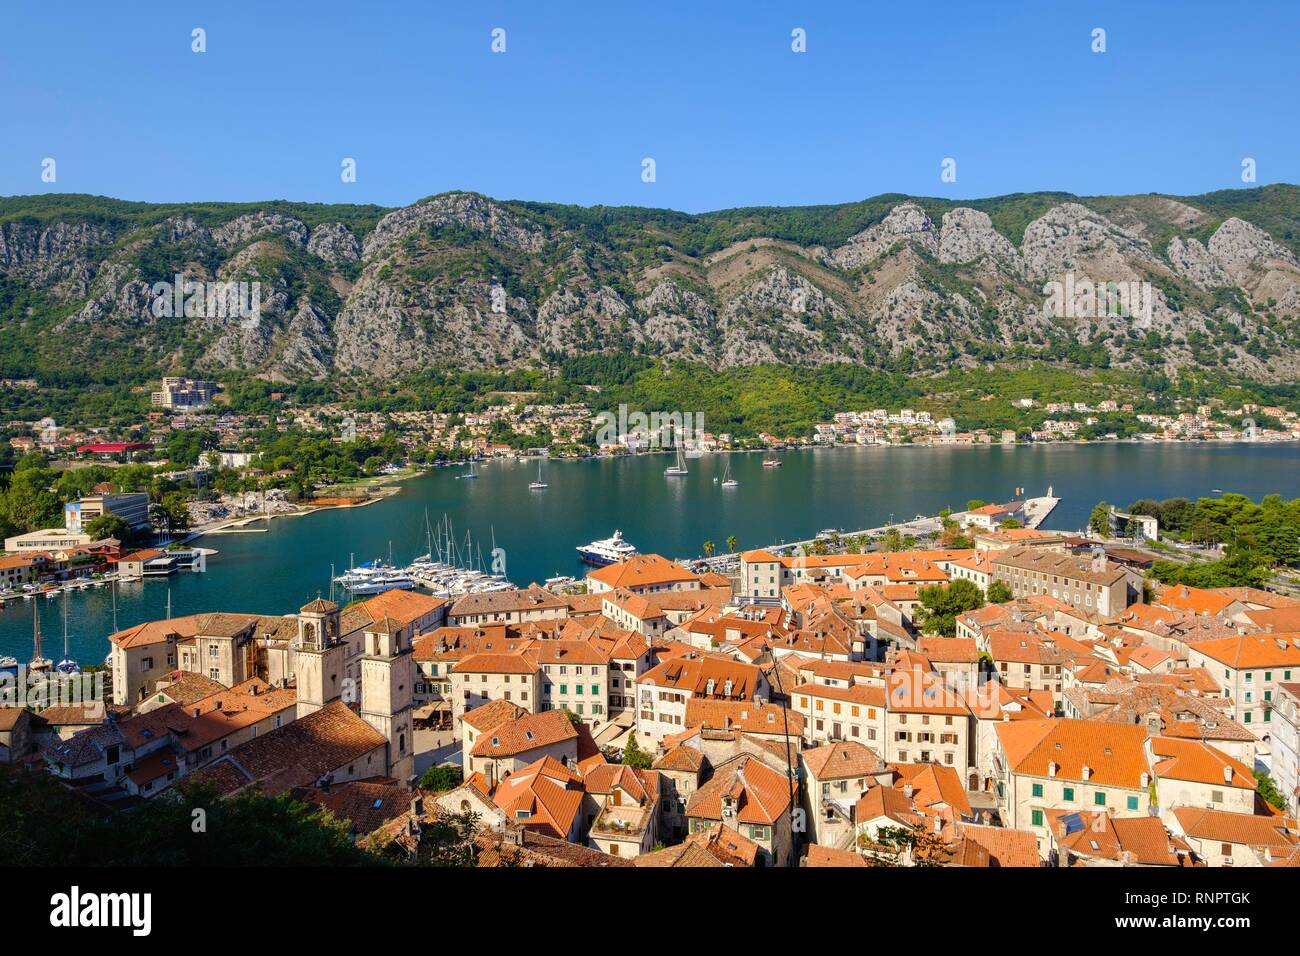 Old Town of Kotor, Bay of Kotor, Montenegro Stock Photo